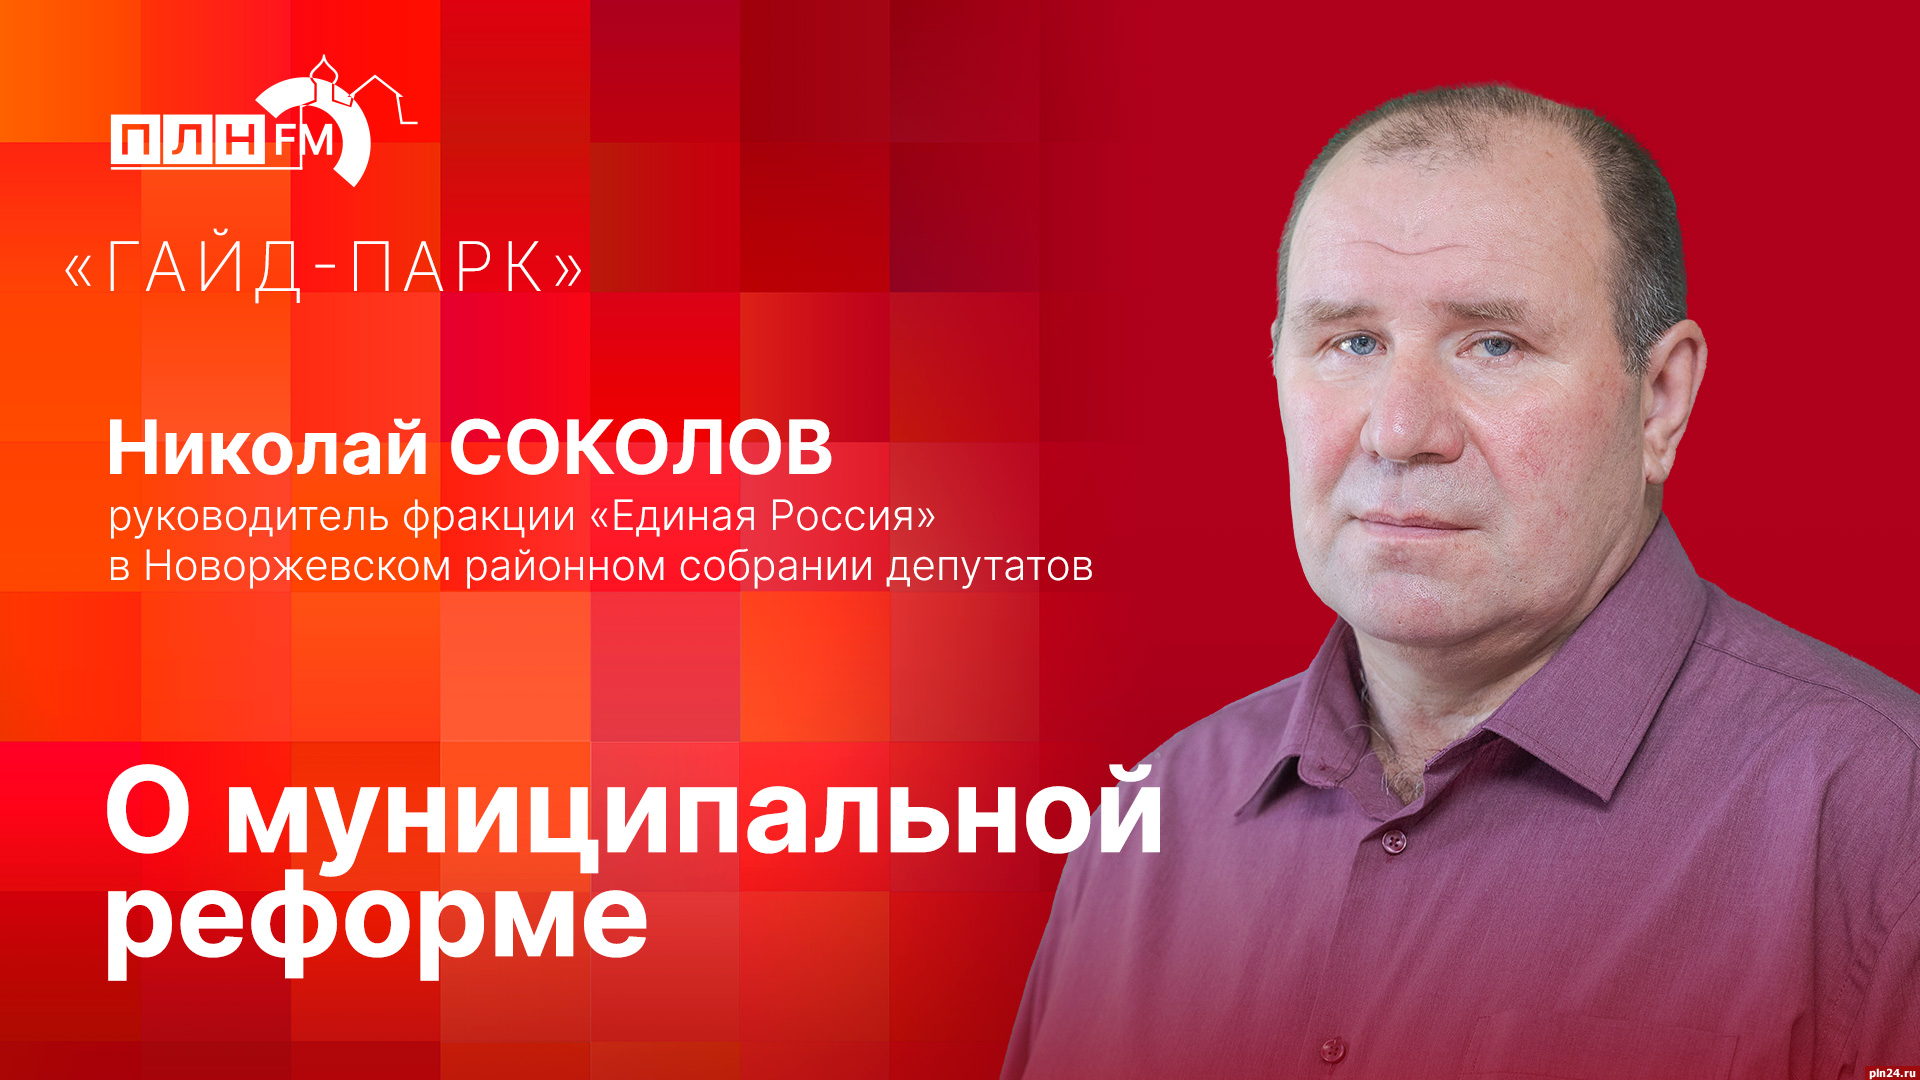 Начинается видеотрансляция программы «Гайд-парк» с руководителем фракции ЕР в Новоржевском районном Собрании депутатов